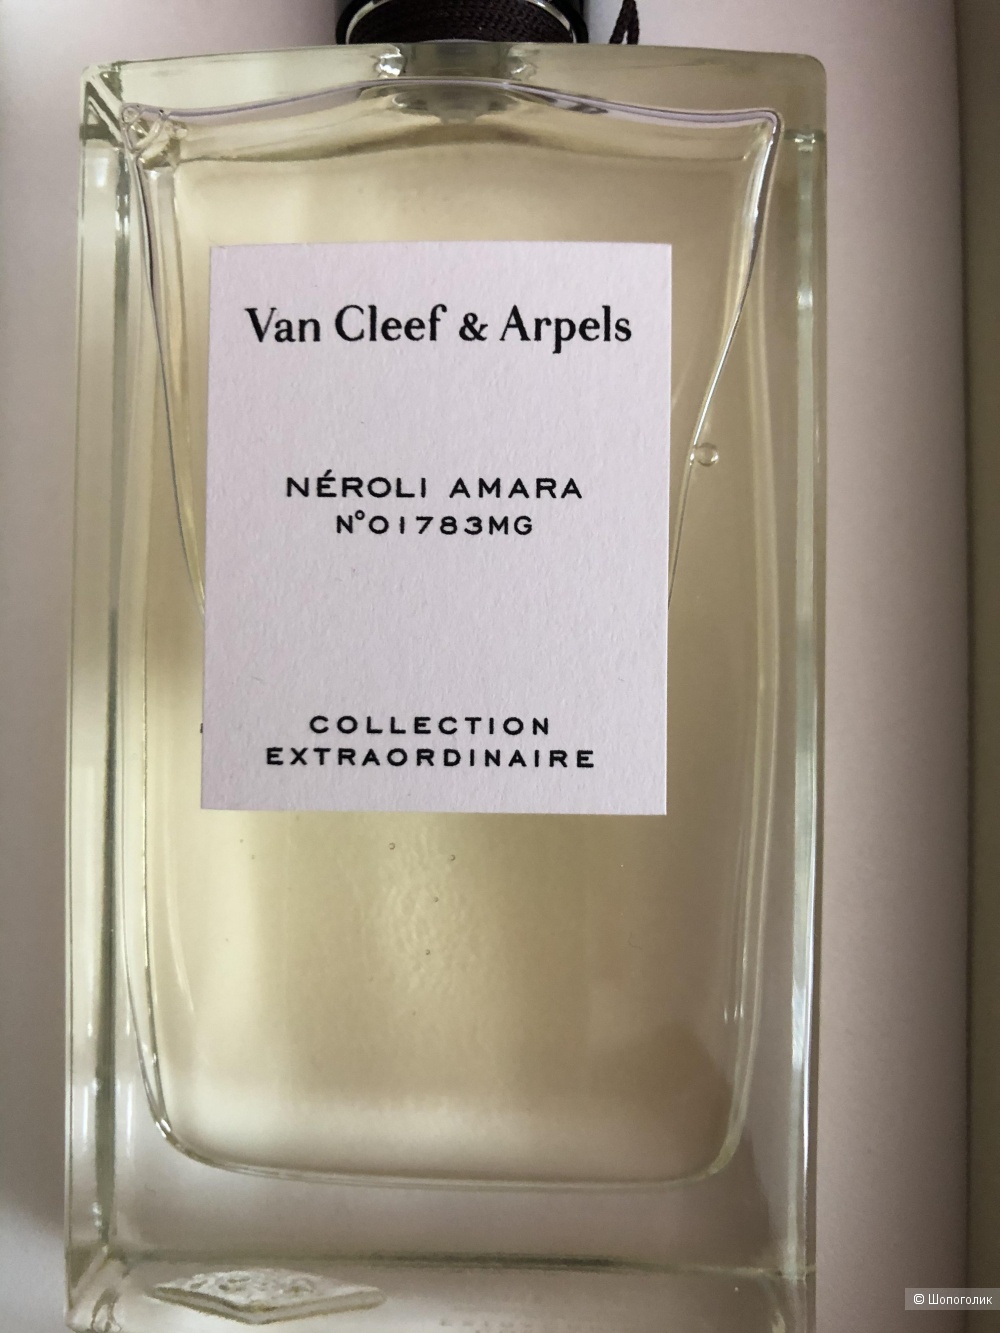 Van Cleef & Arpels Collection Extraordinaire Neroli Amara 75 ml